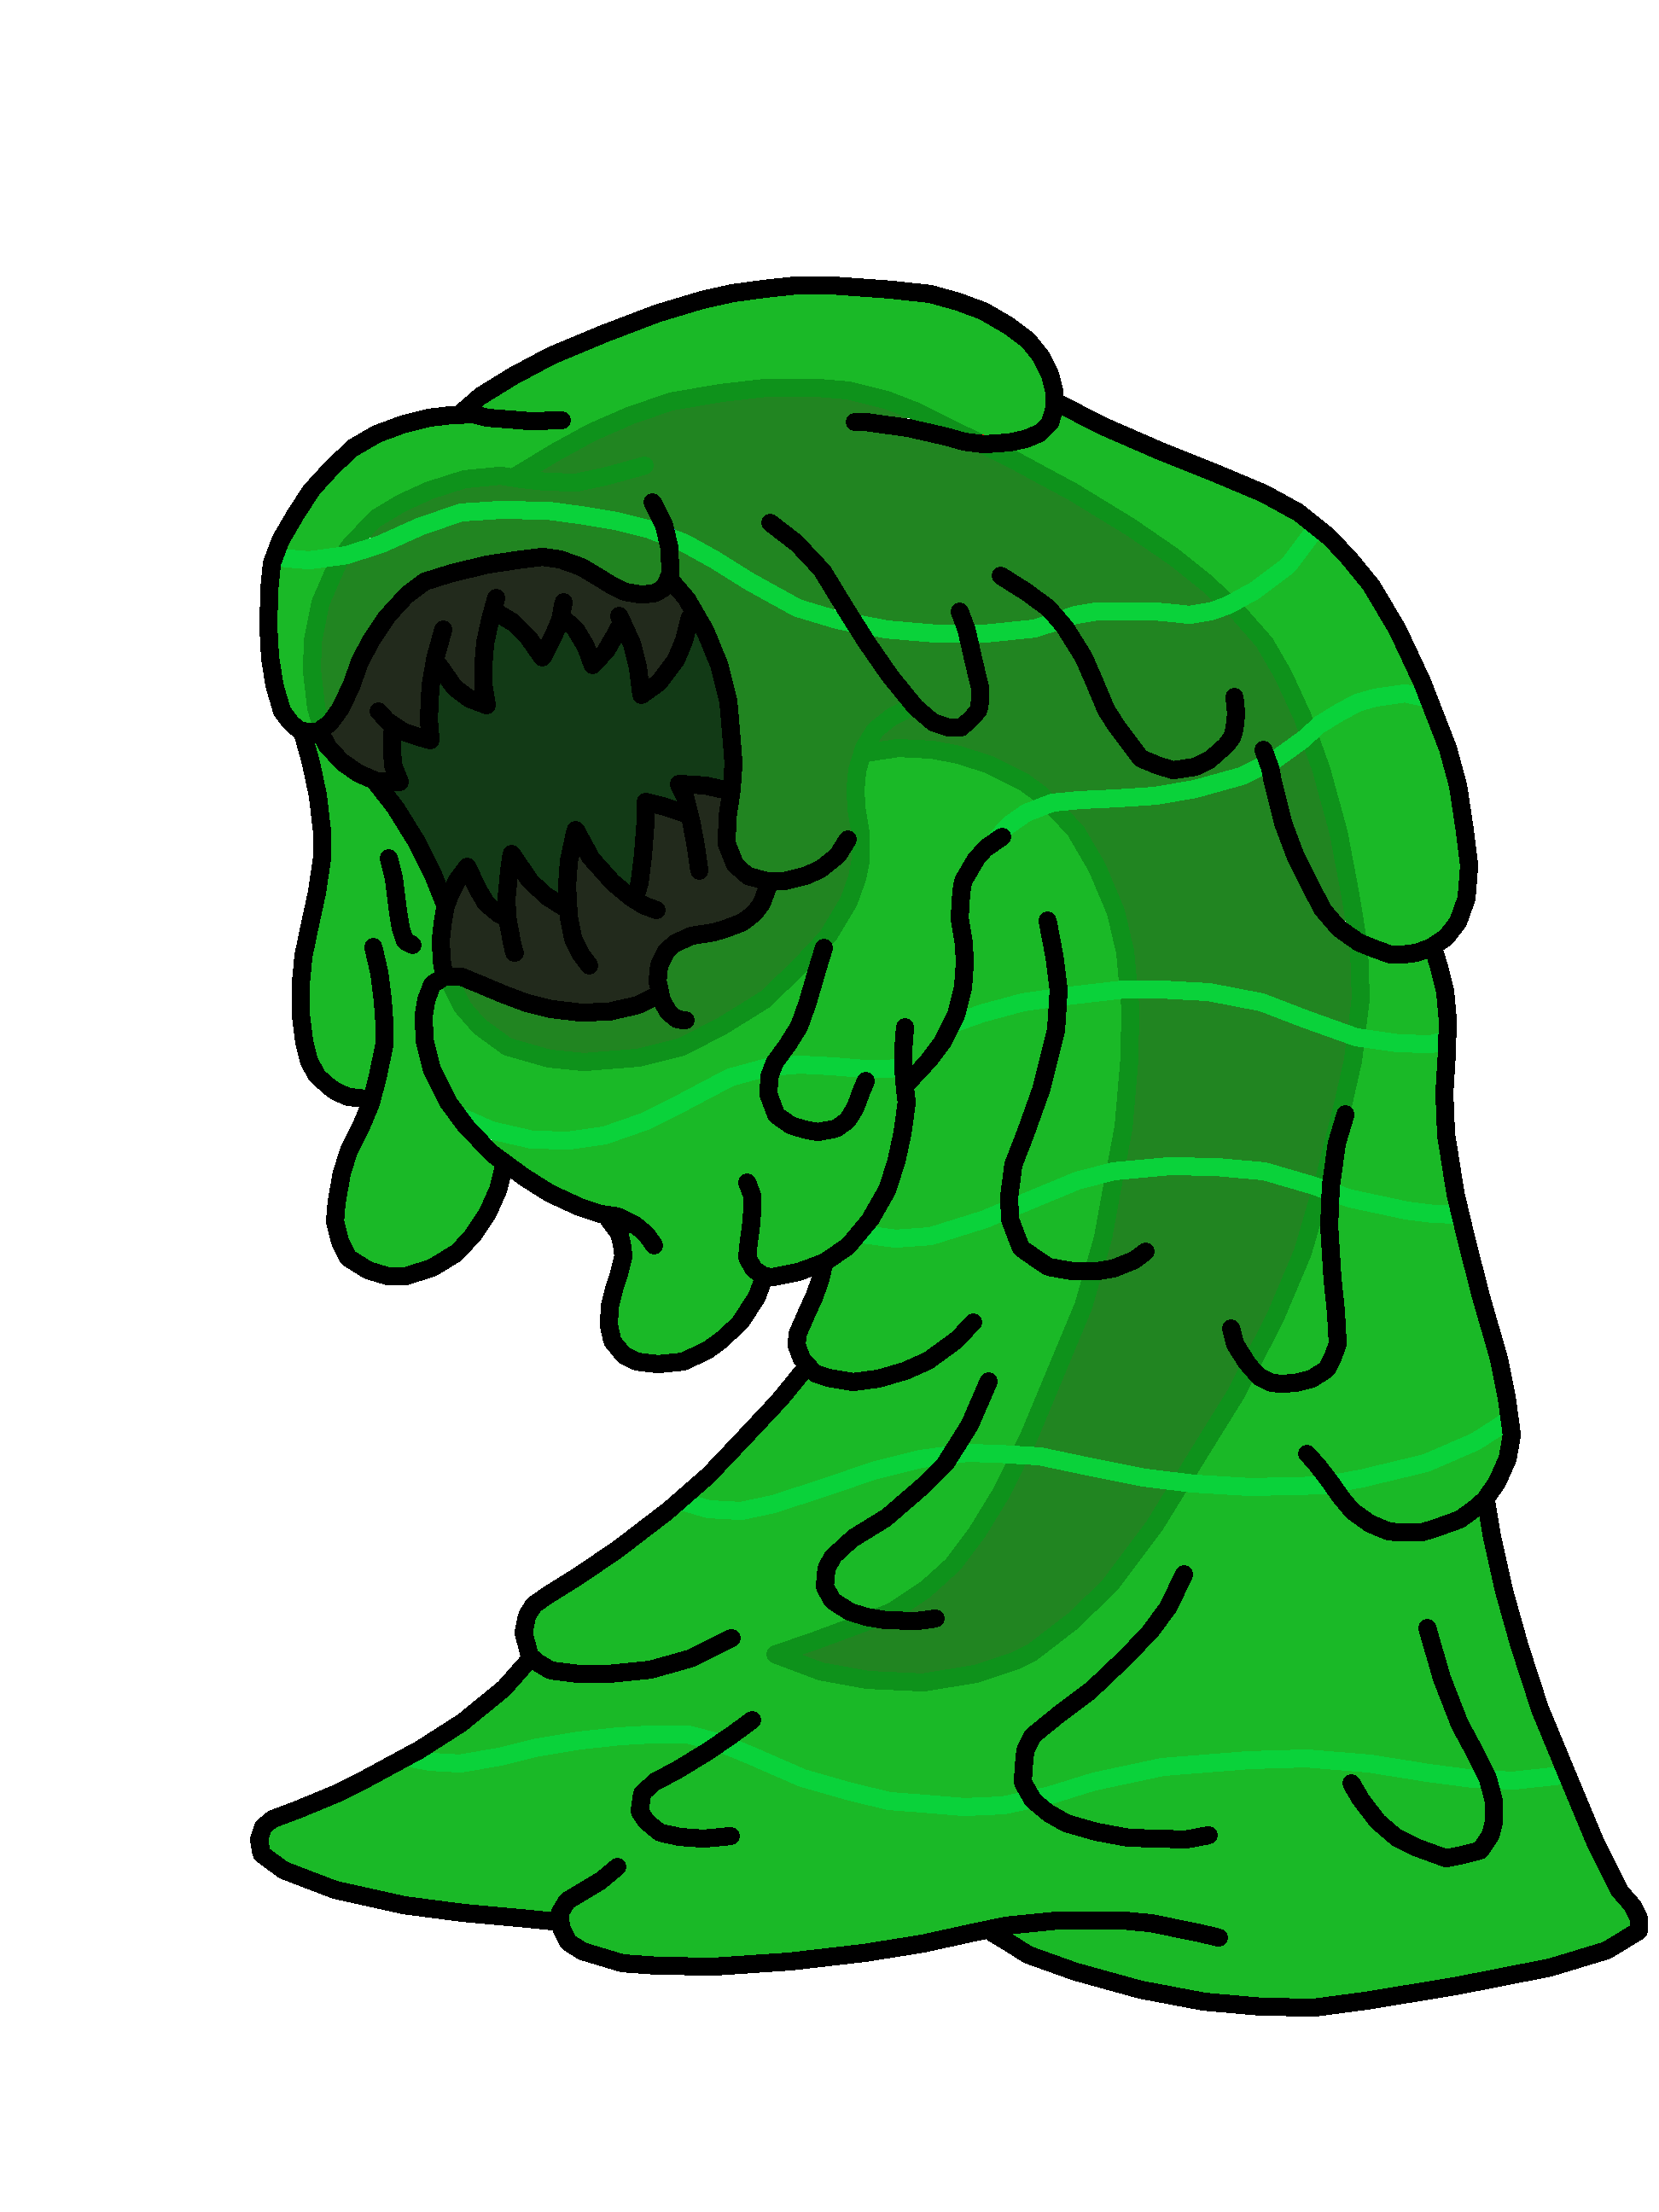 The Green Slime - Wikipedia